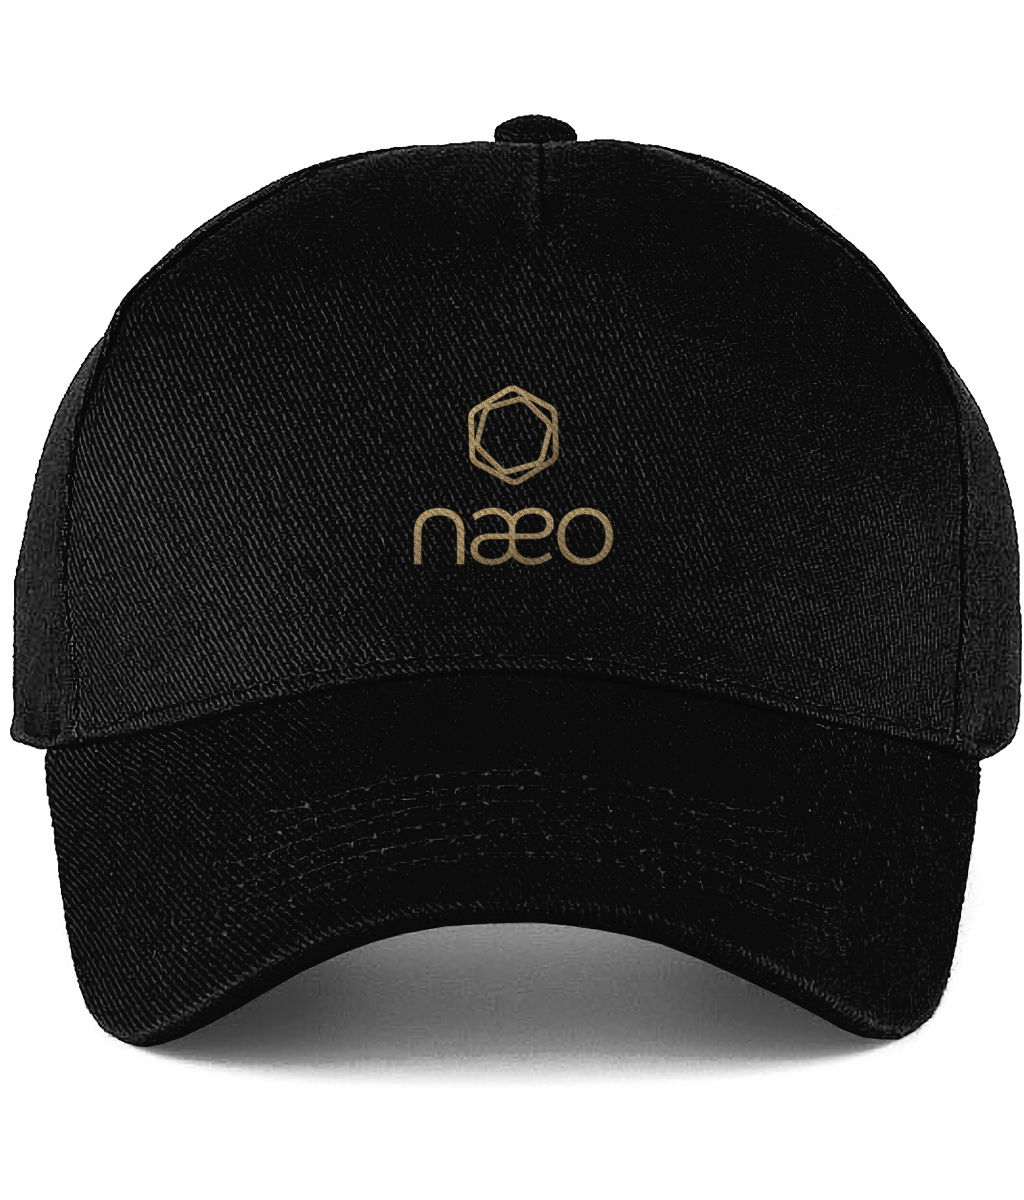 Naeo Signature Cap